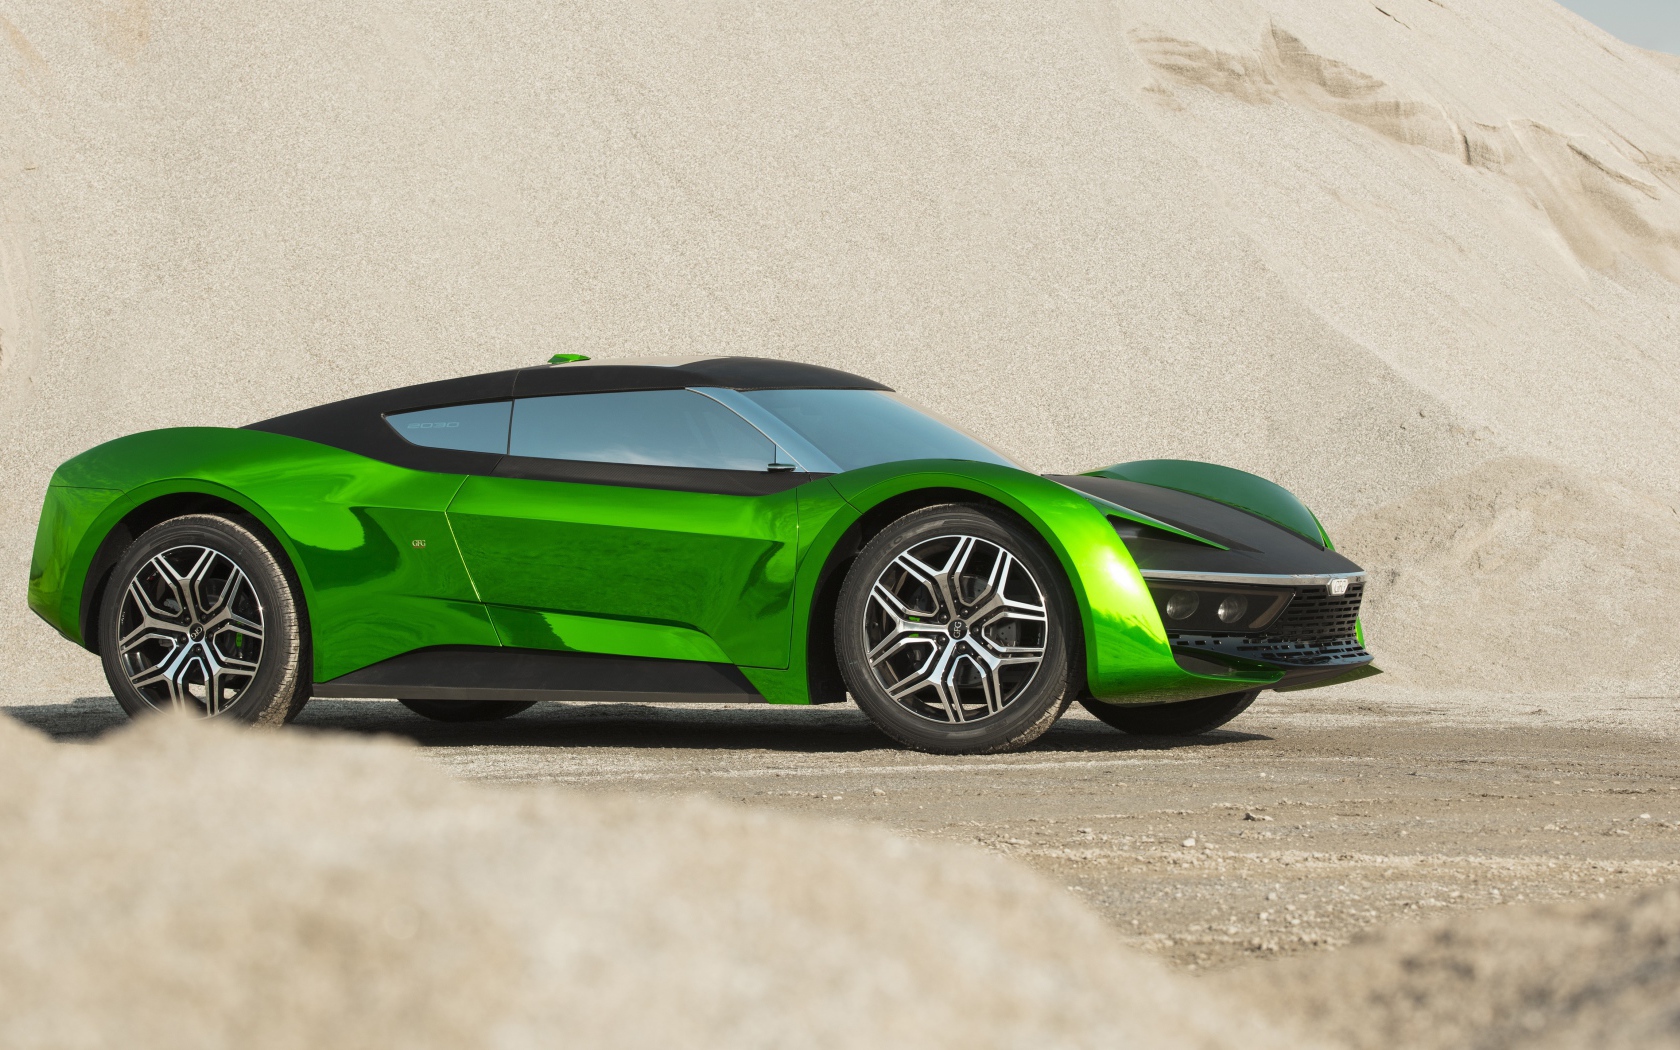 Зеленый автомобиль GFG Vision 2020 года стоит на песке